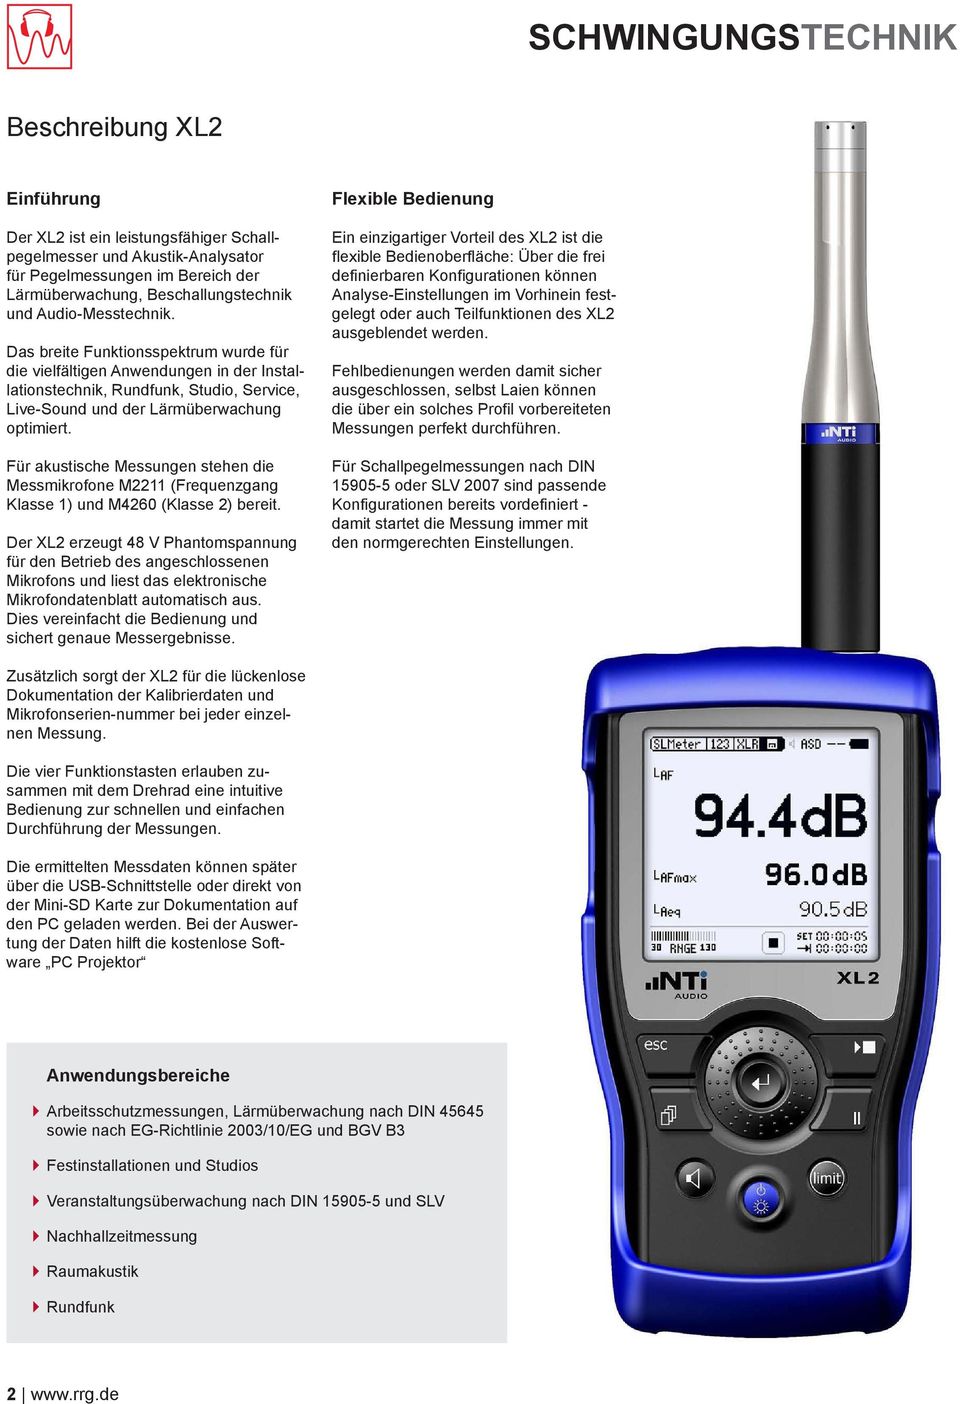 Für akustische Messungen stehen die Messmikrofone M2211 (Frequenzgang Klasse 1) und M4260 (Klasse 2) bereit.